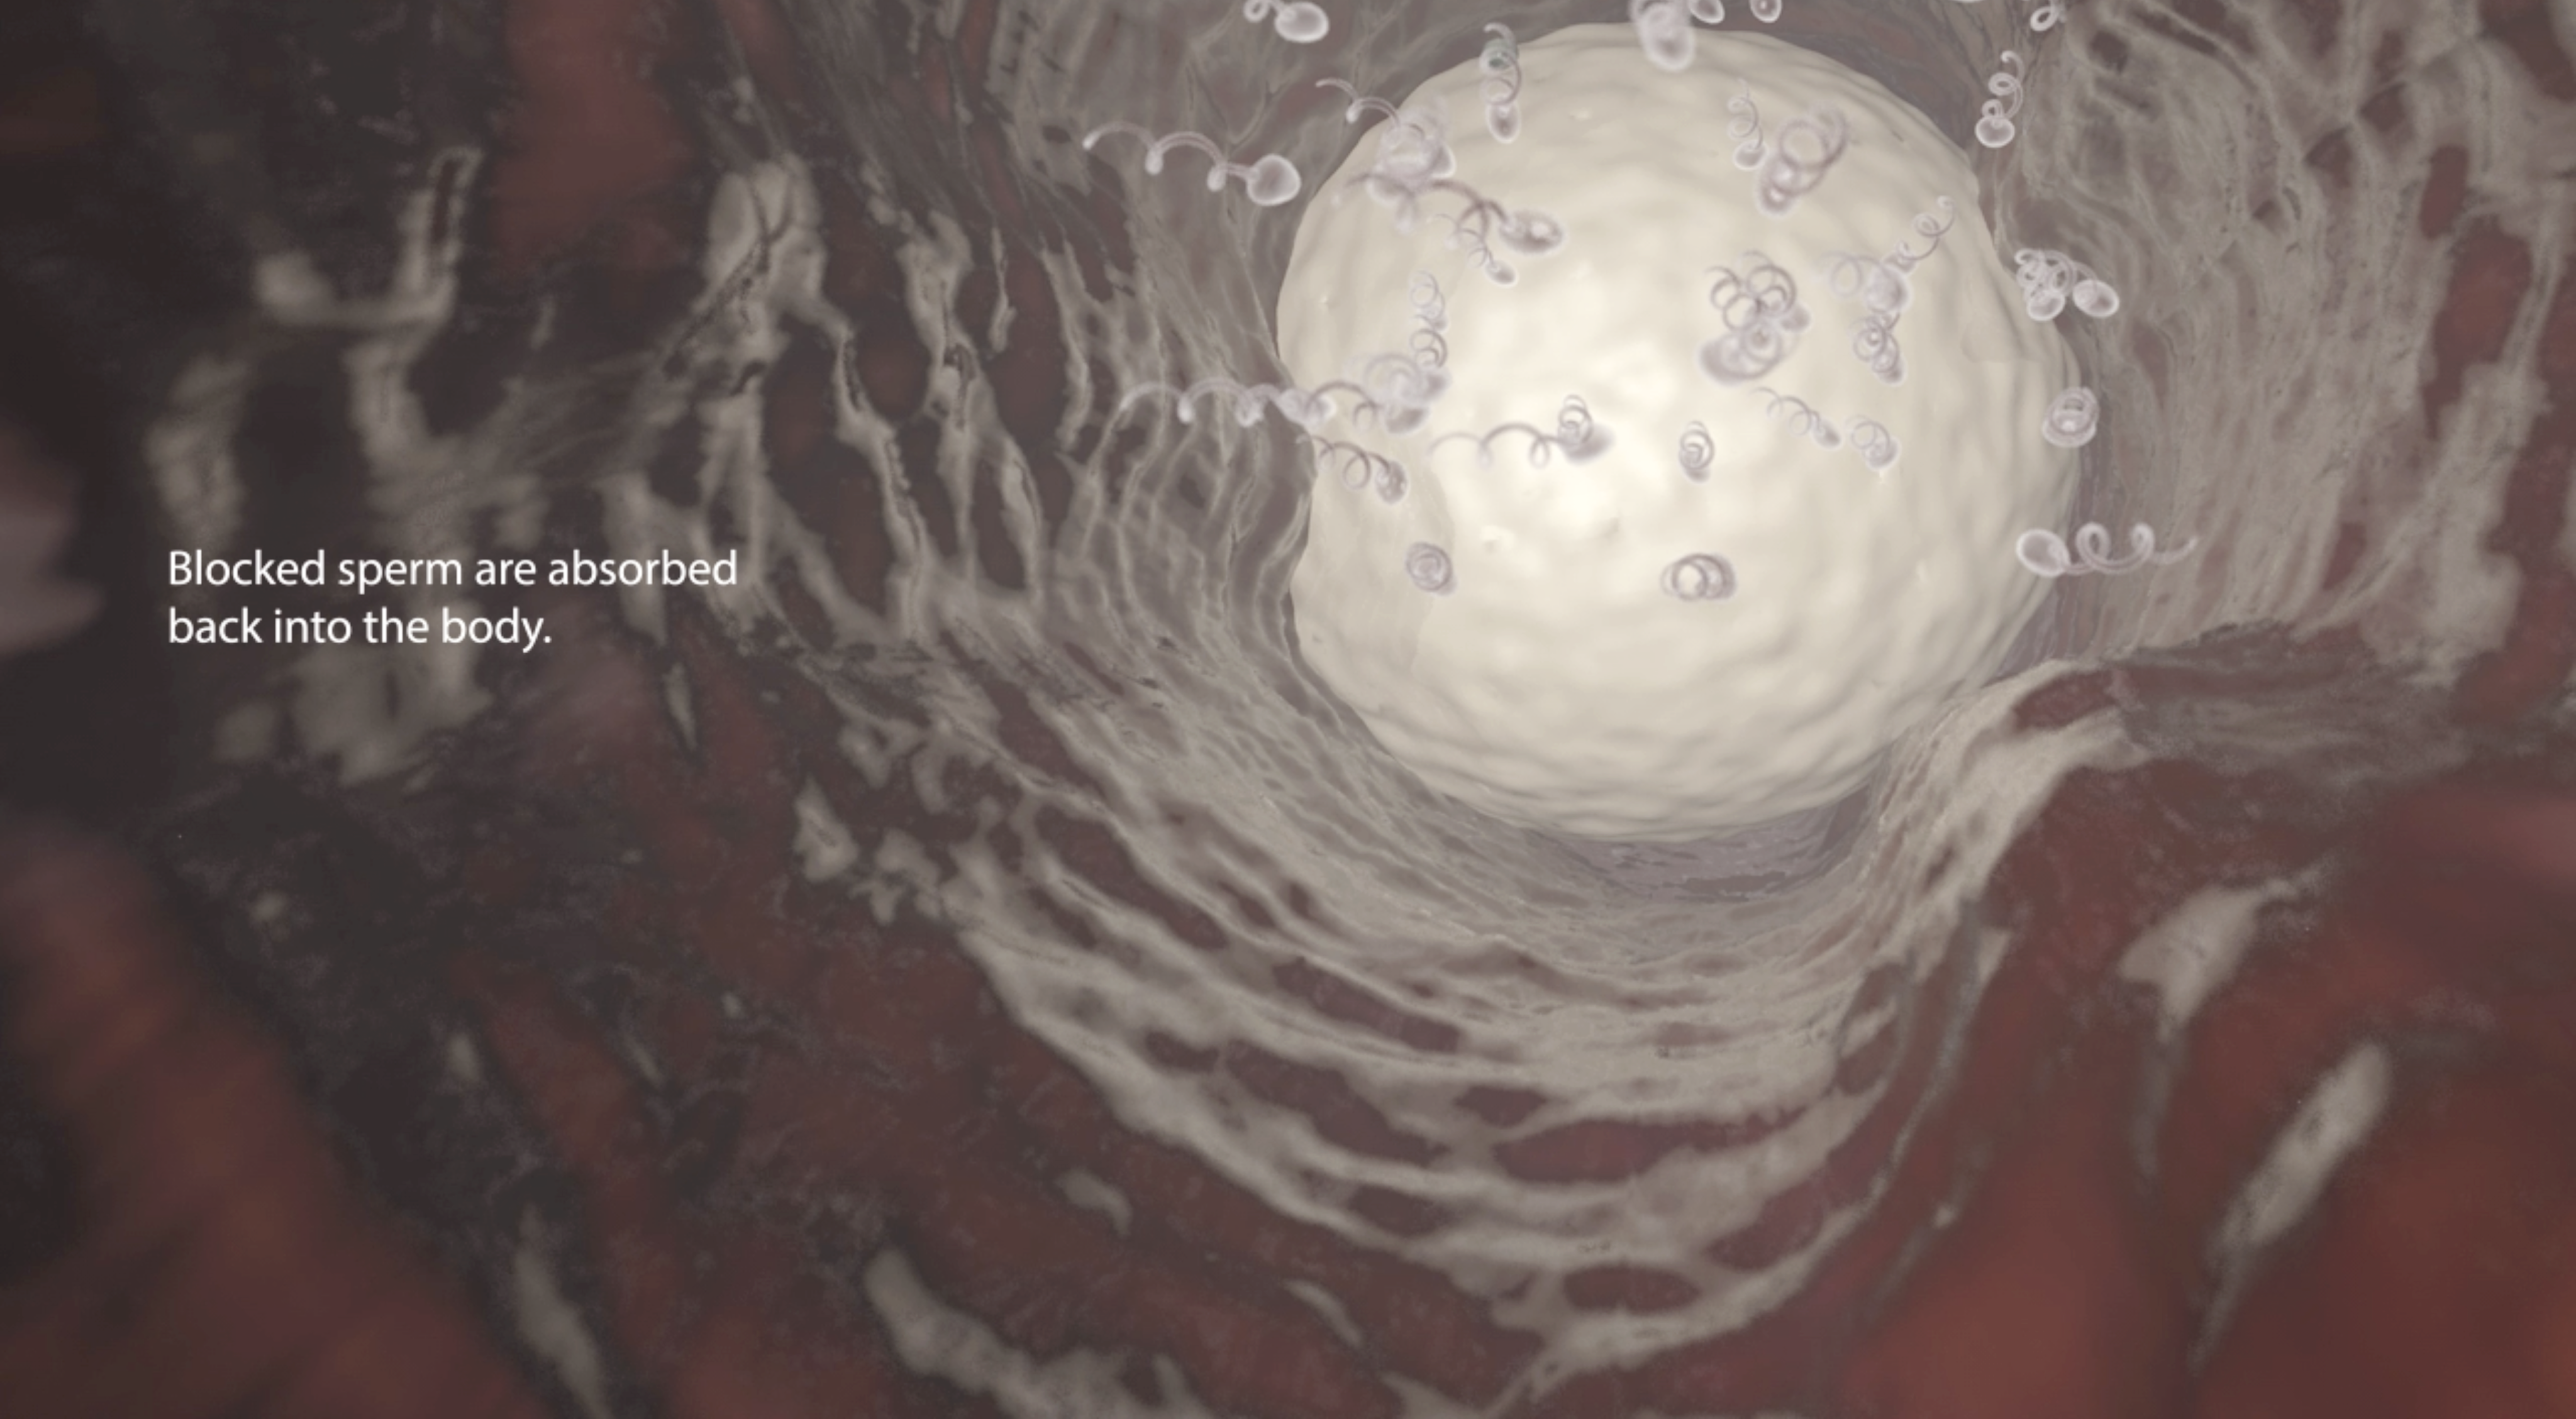 3D representation of Vasalgel blocking sperm in a human vas deferens